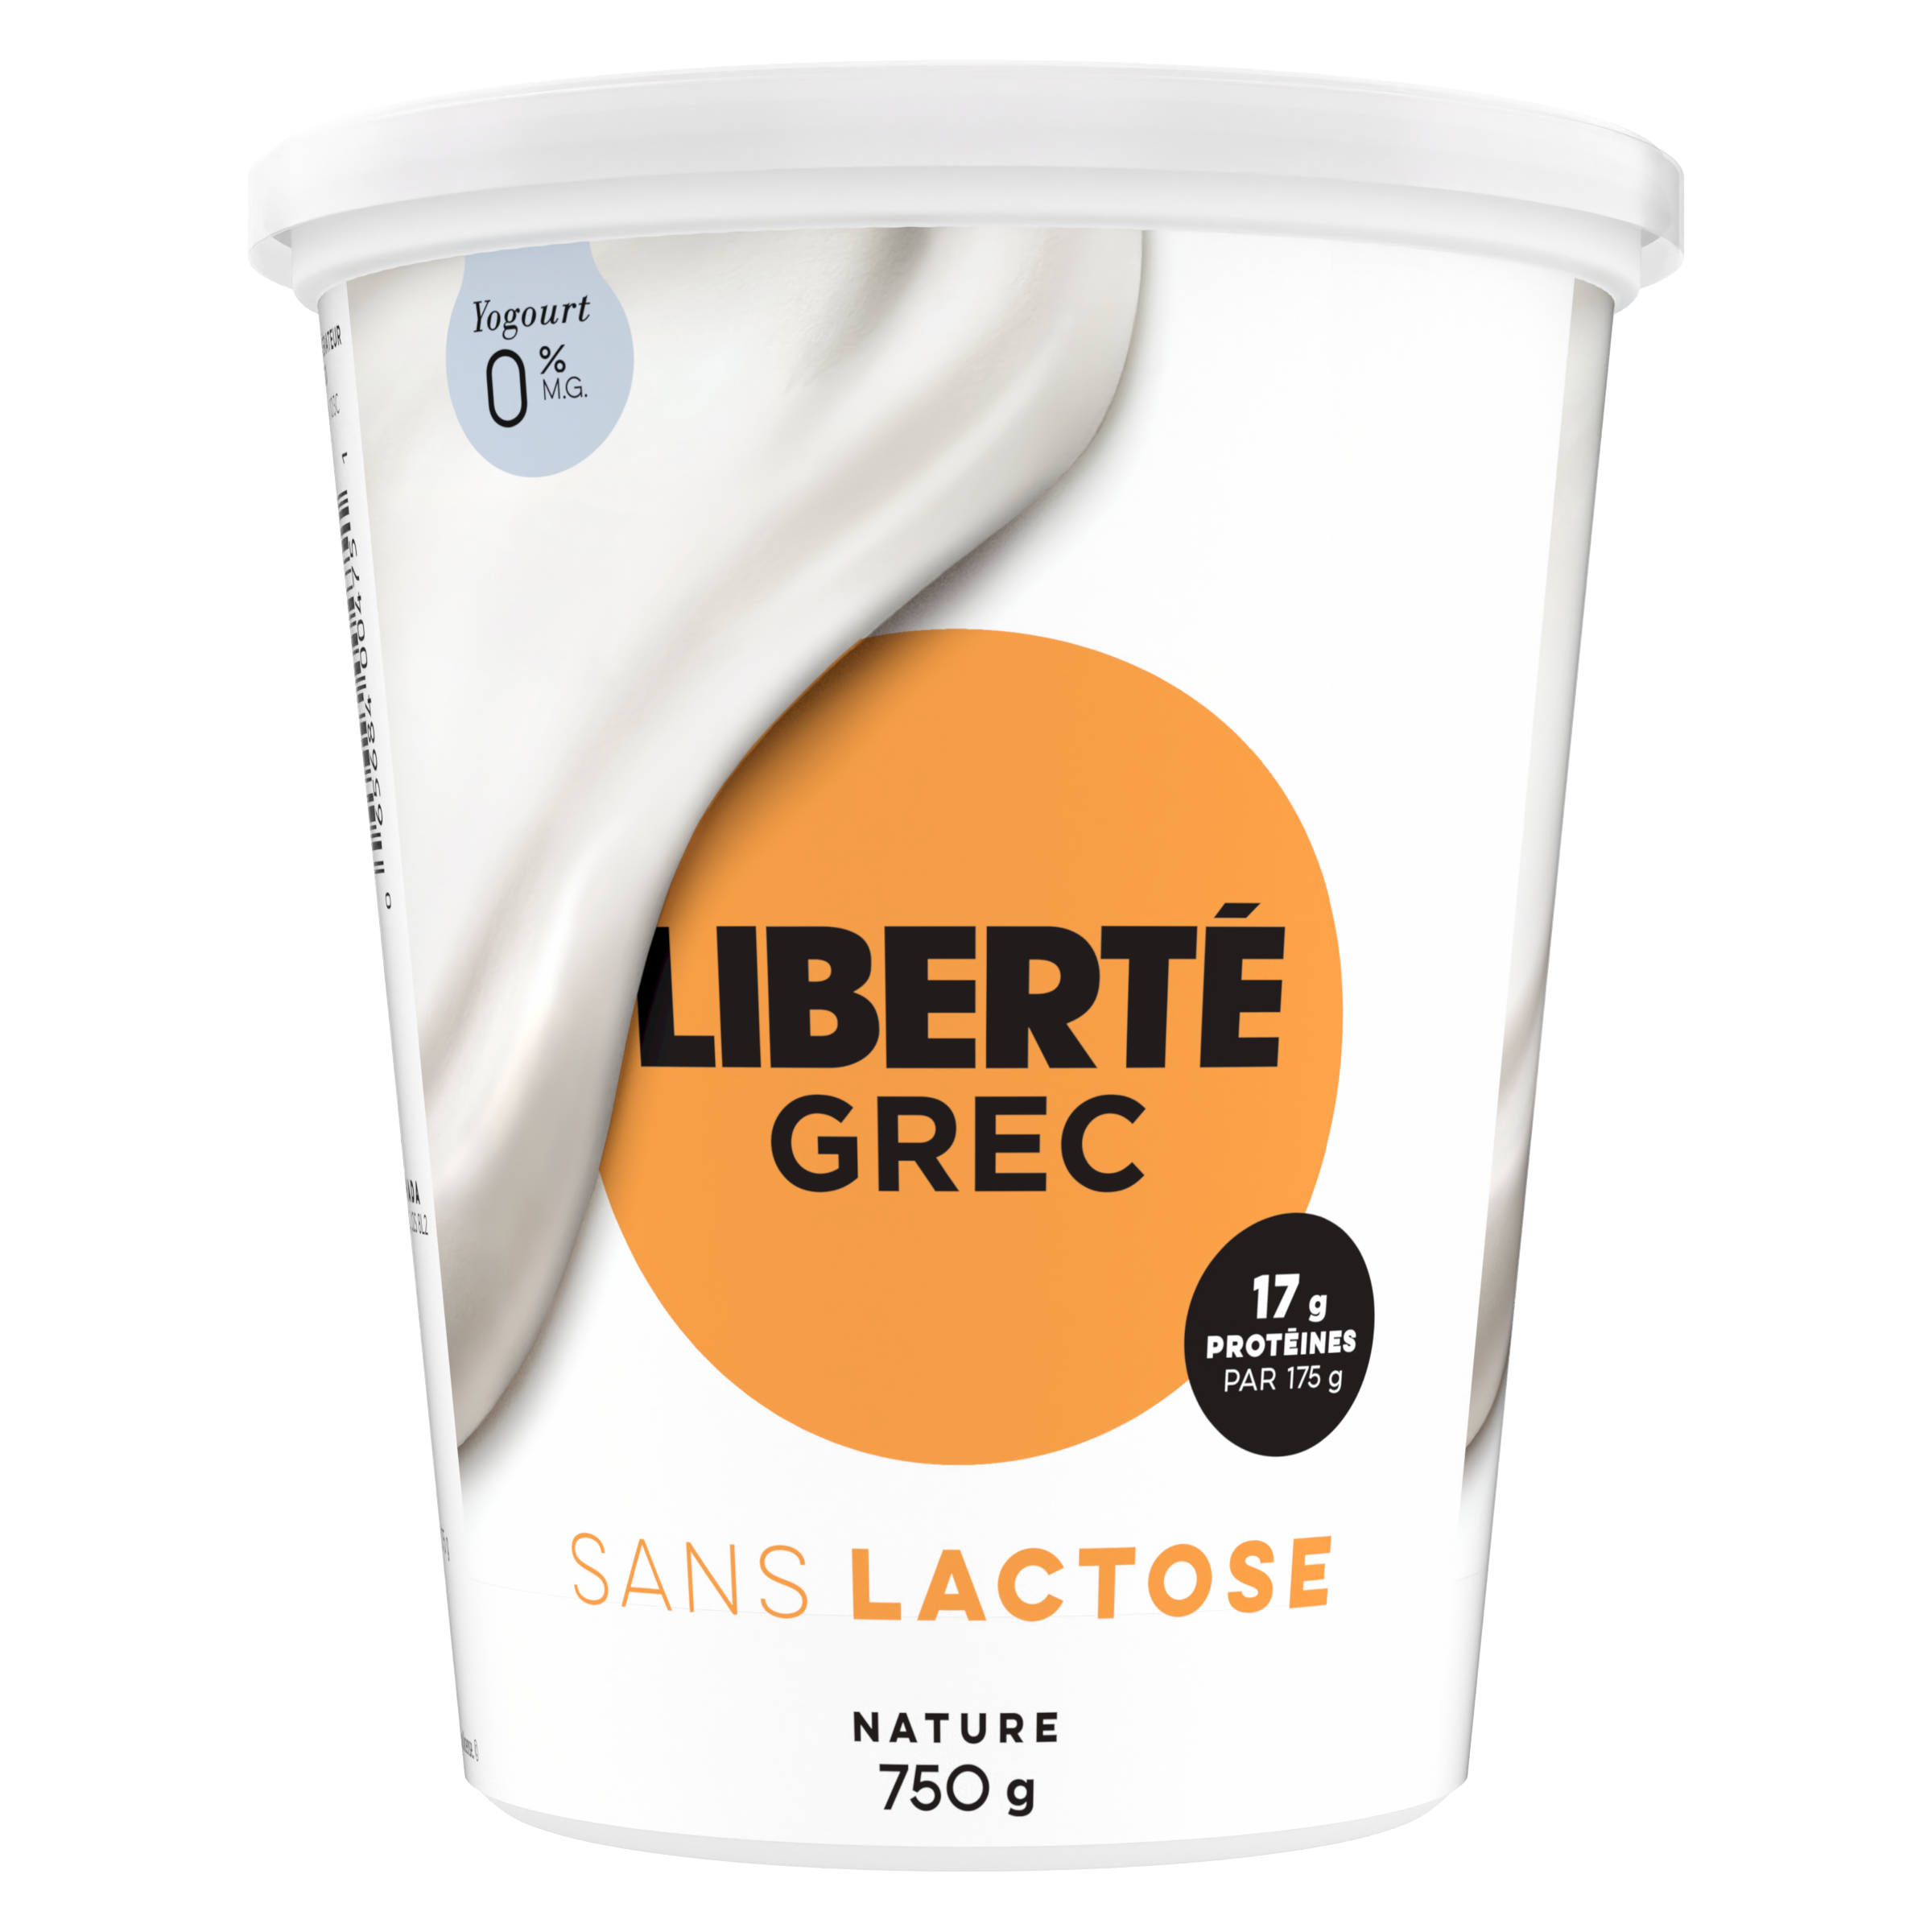 Liberté Grec nature 0% sans lactose